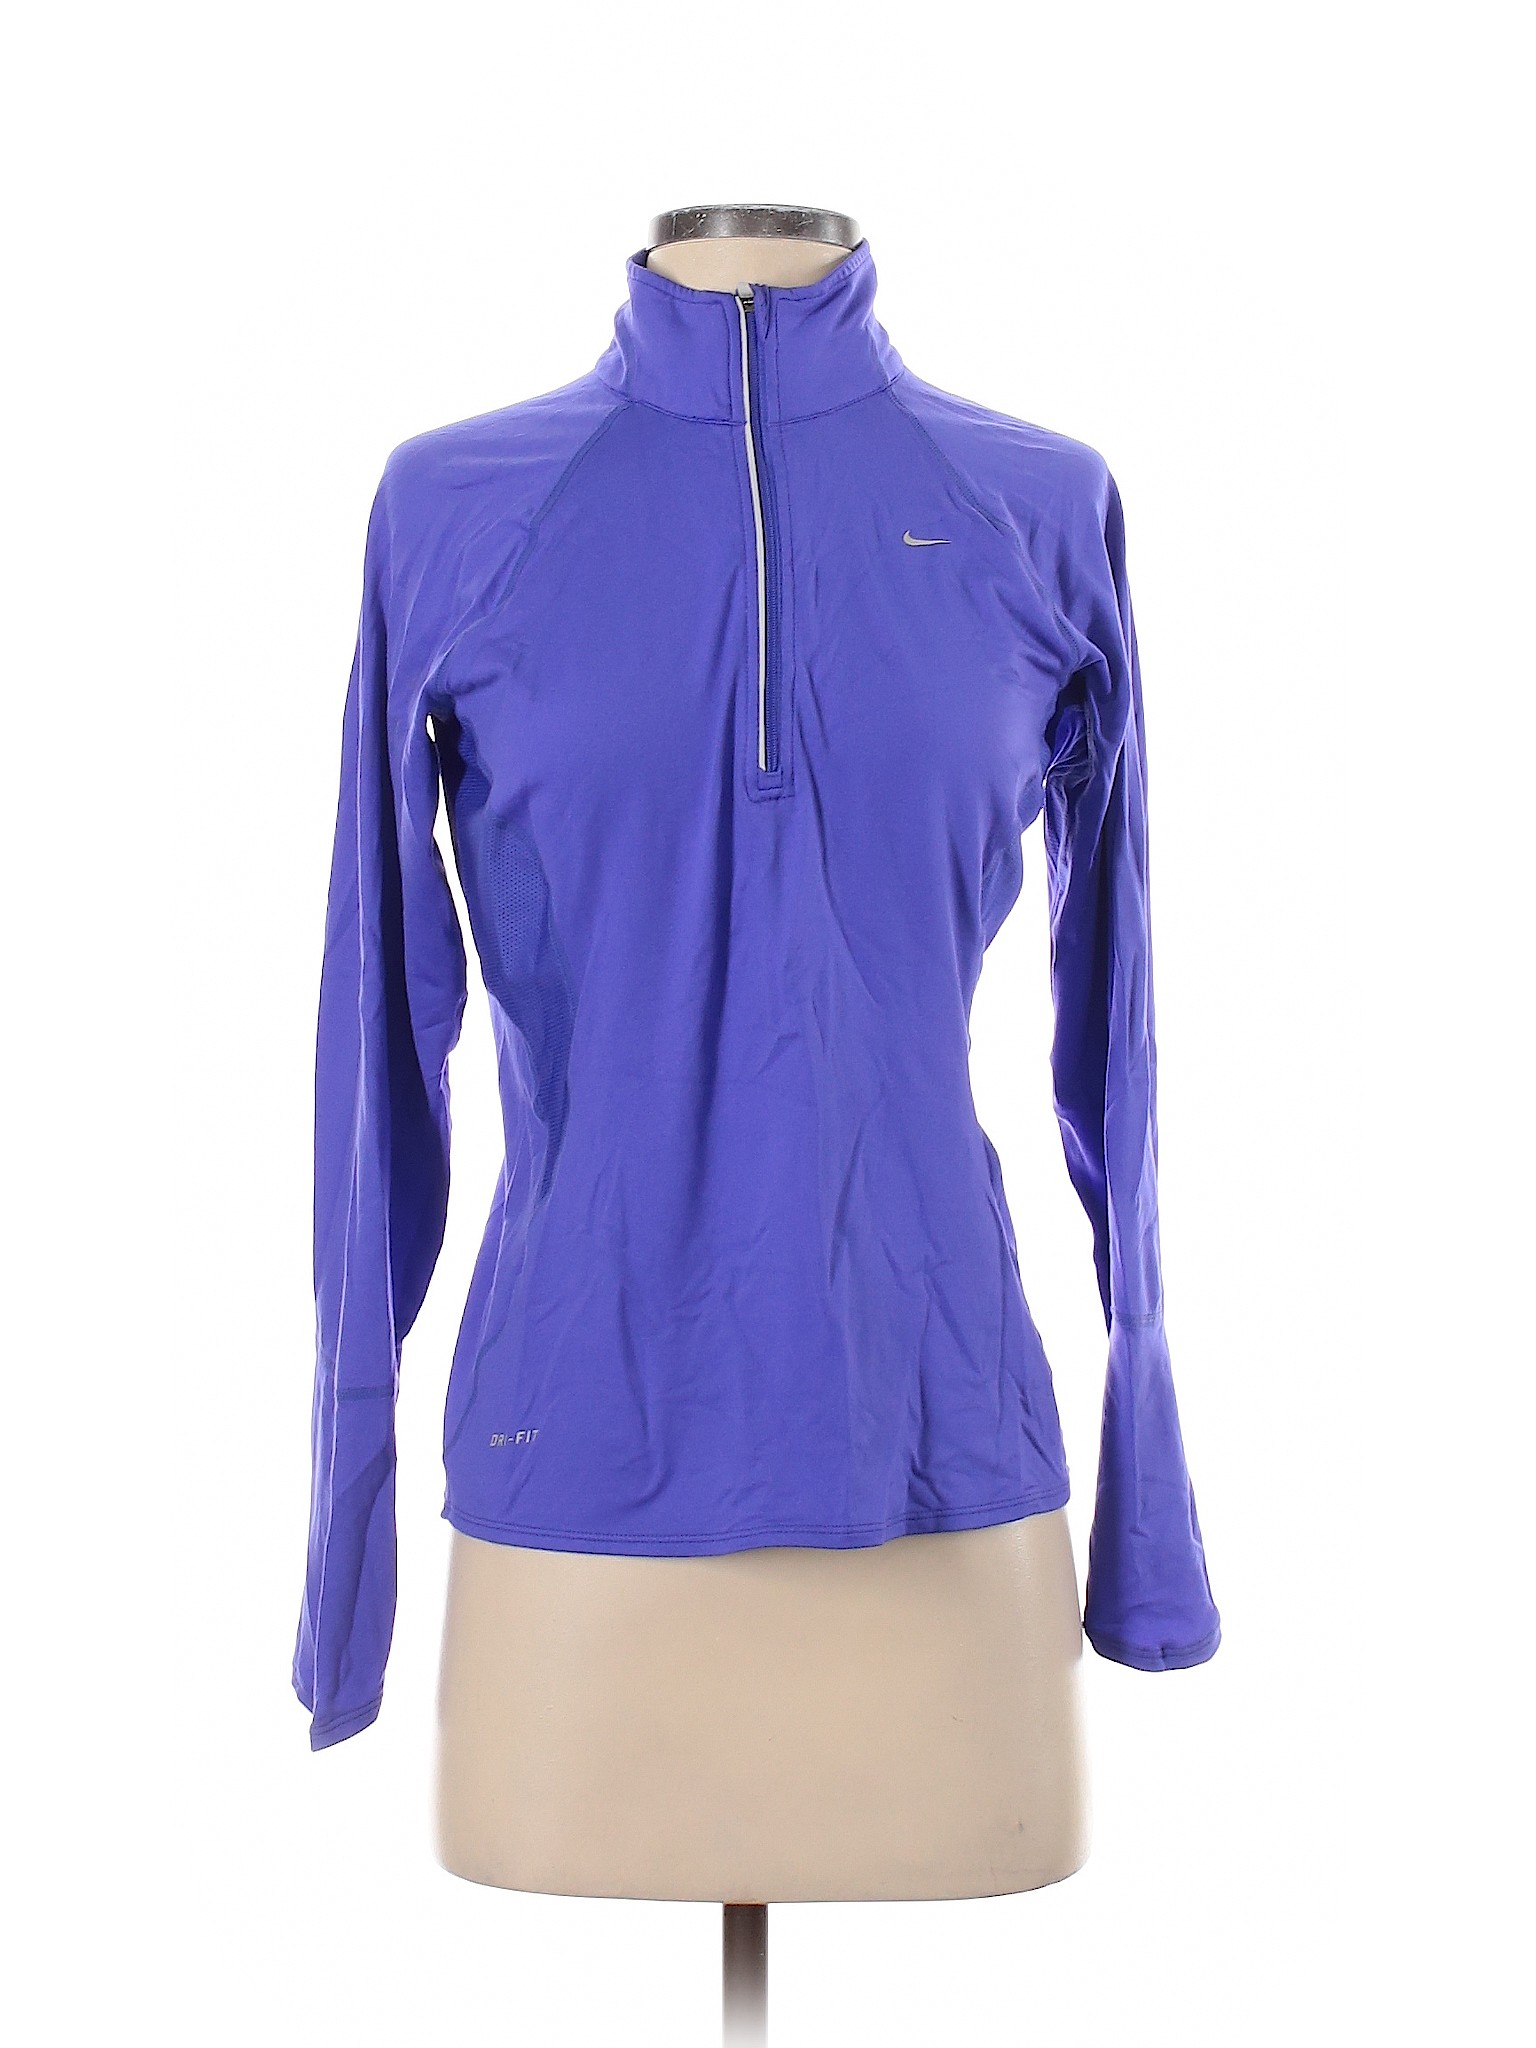 Nike Women Purple Track Jacket S | eBay